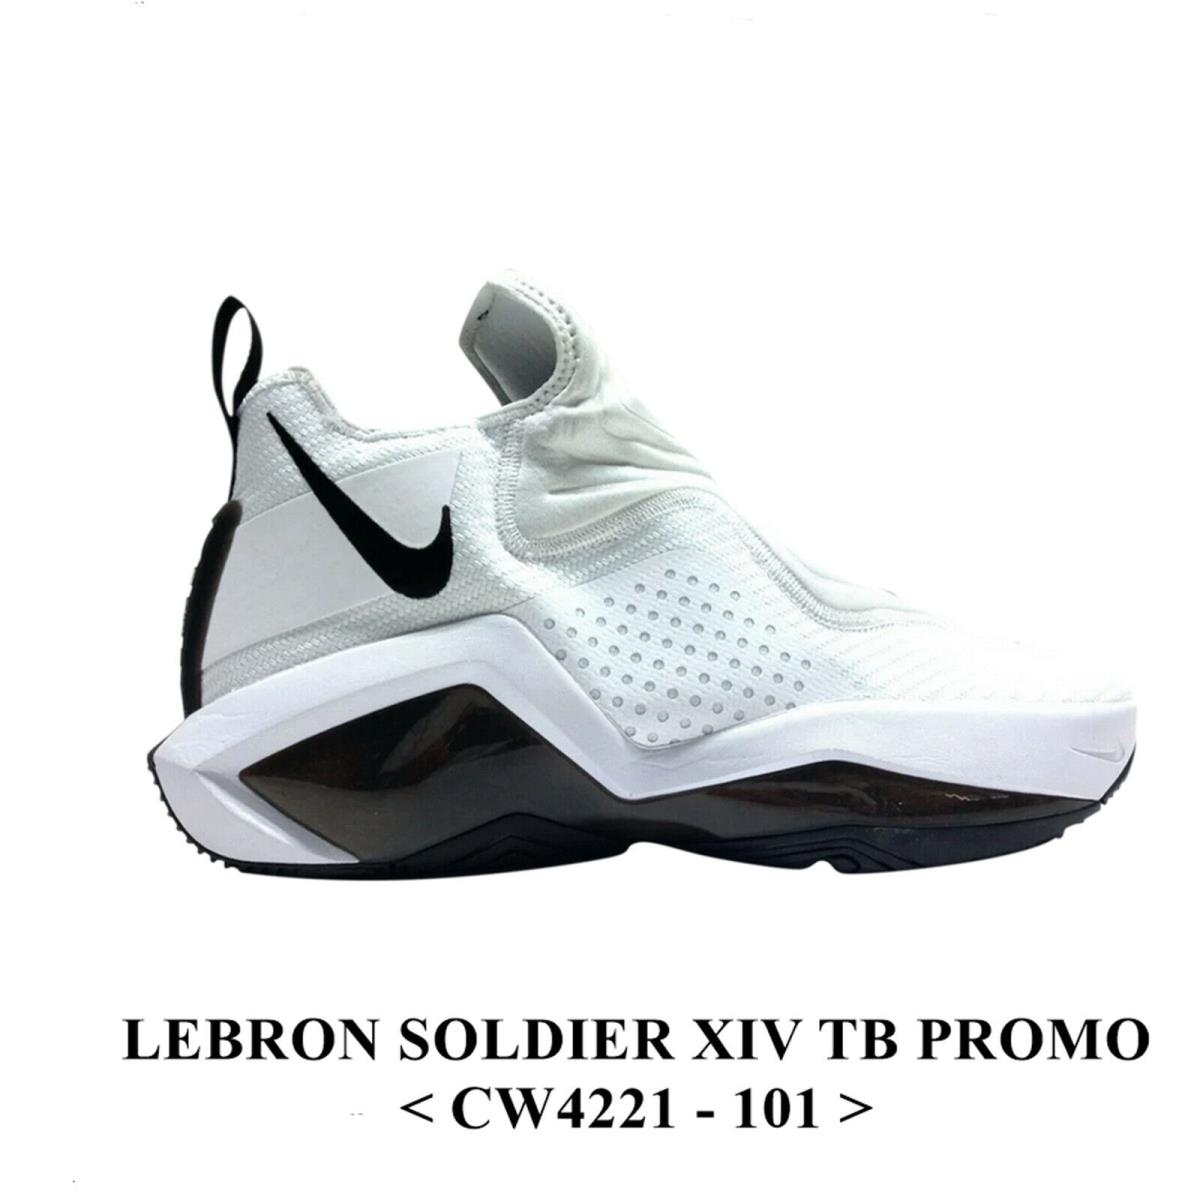 Nike Lebron Soldier Xiv TB Promo CW4221 - 101 Men`s Basketball Shoe NO Lid